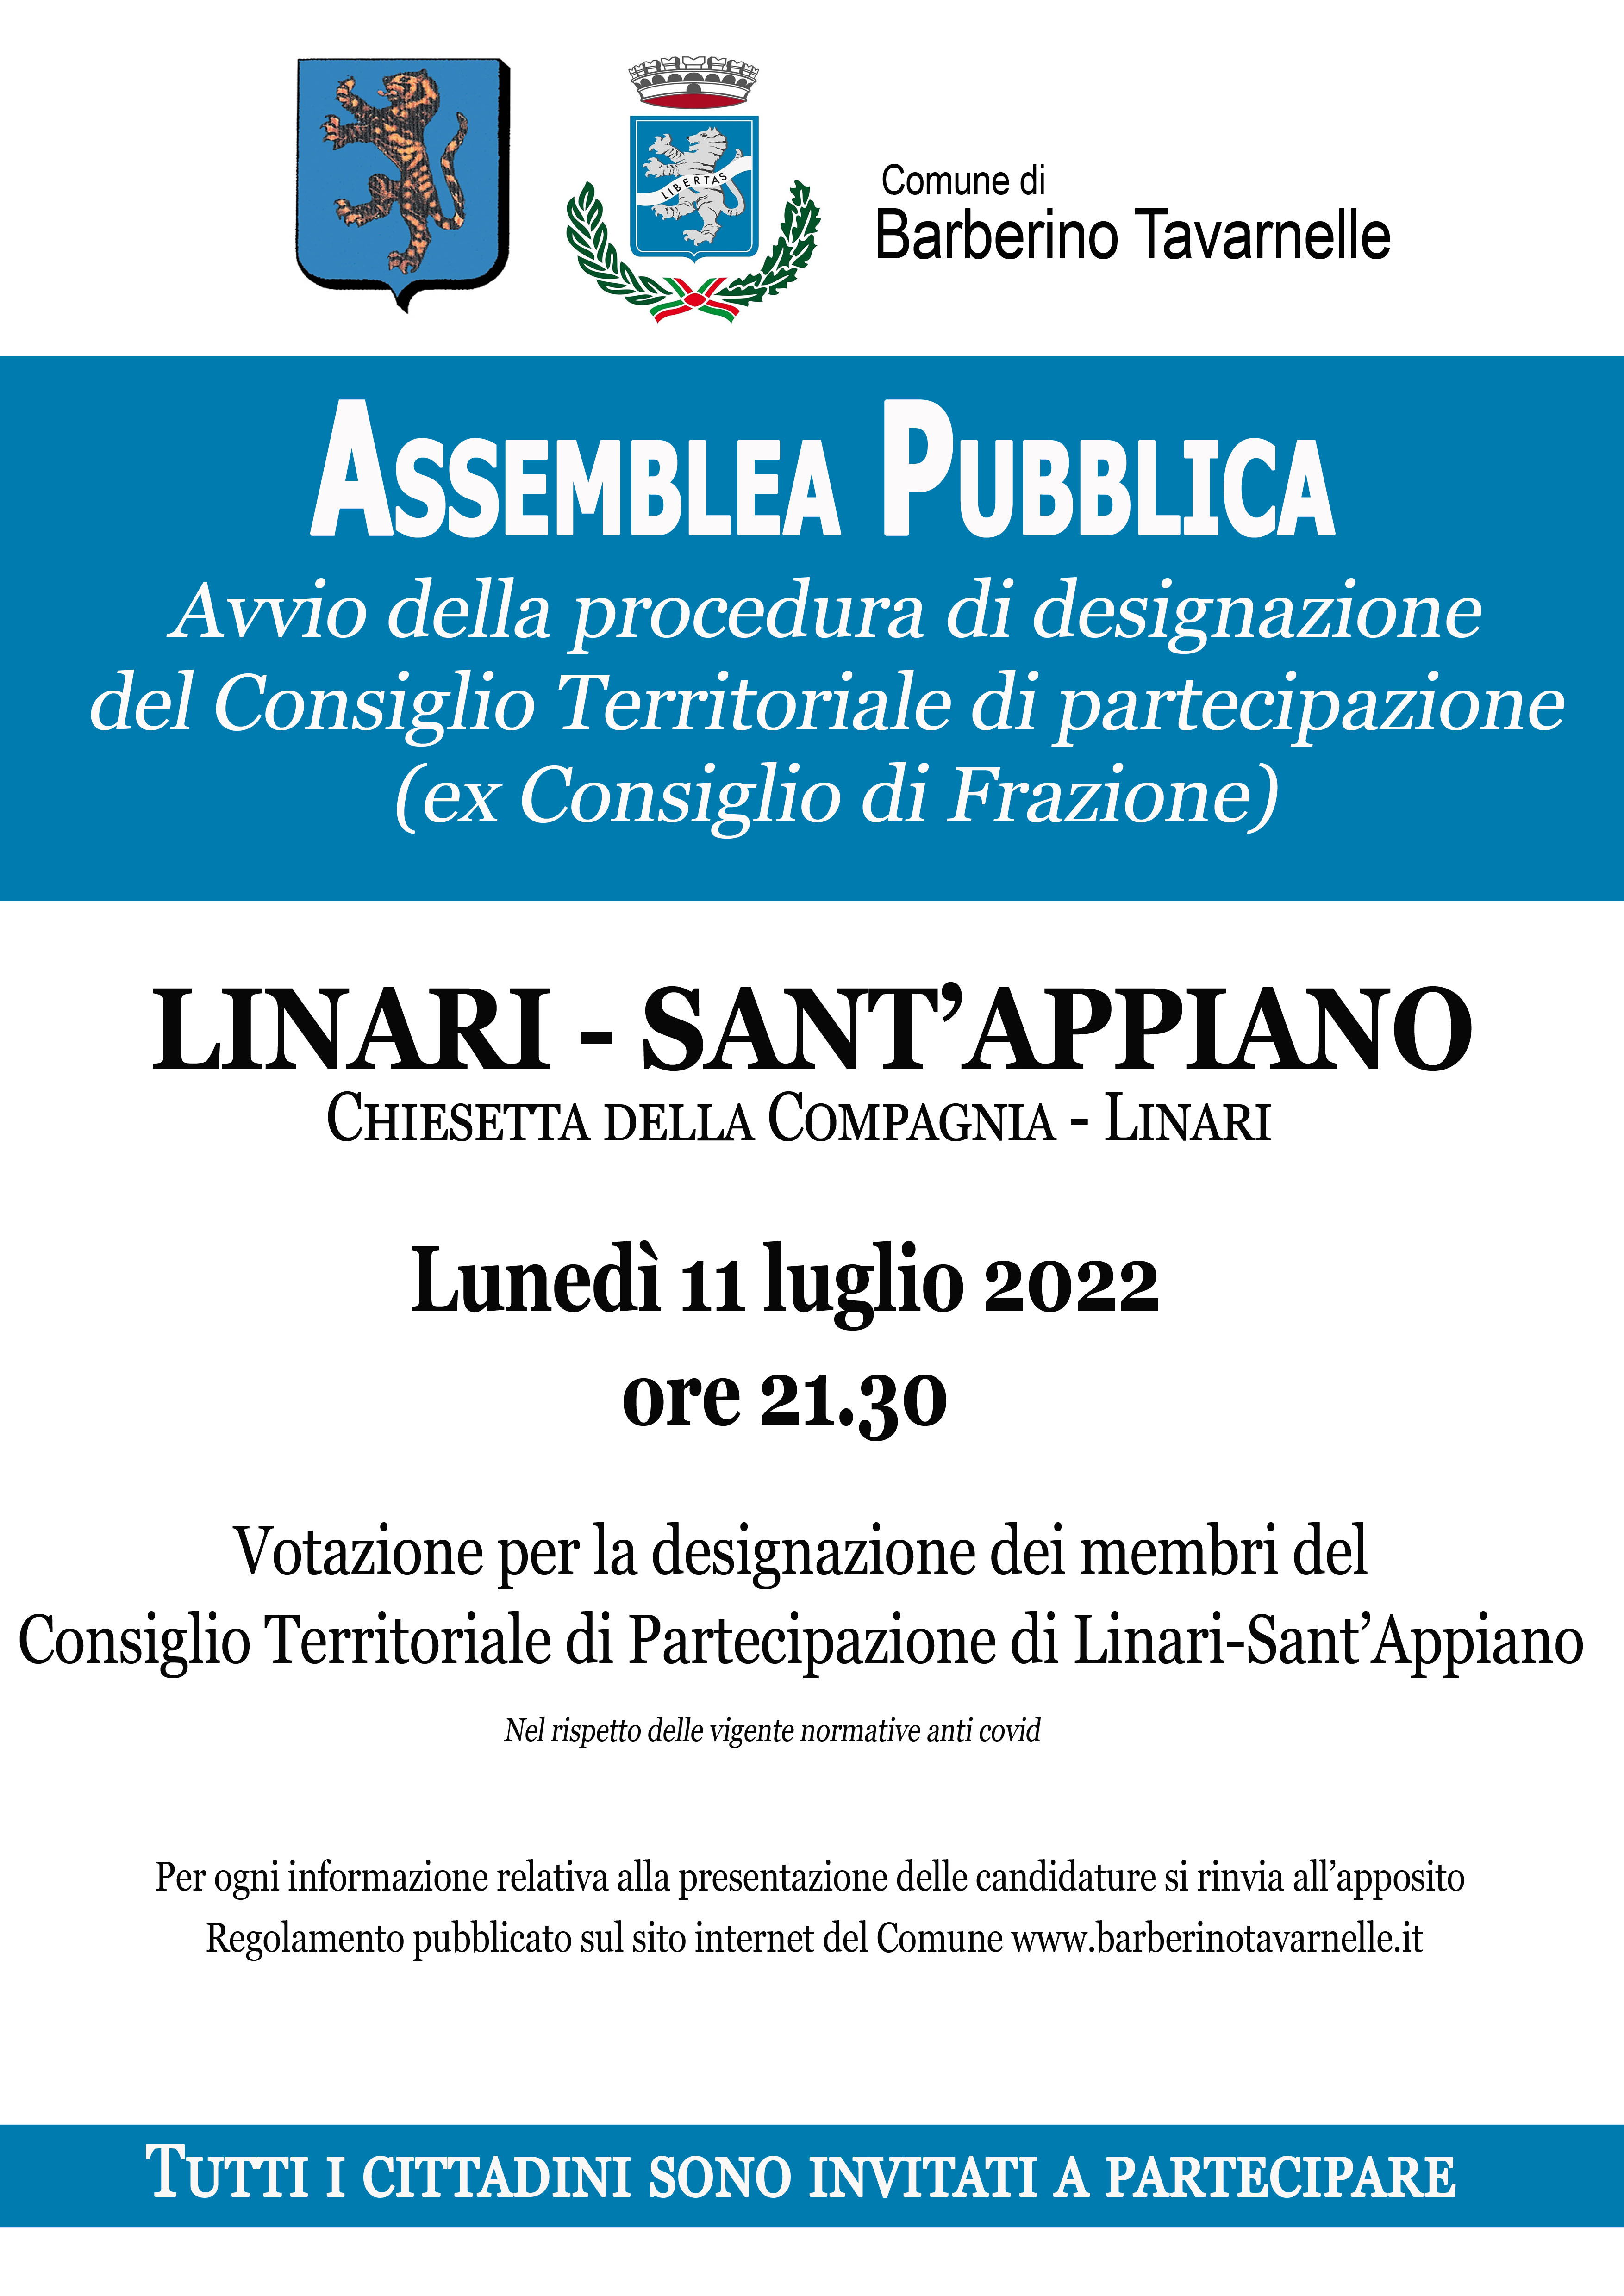 Locandina votazione Consigli Territoriali di Partecipazione Linari - Sant'Appiano